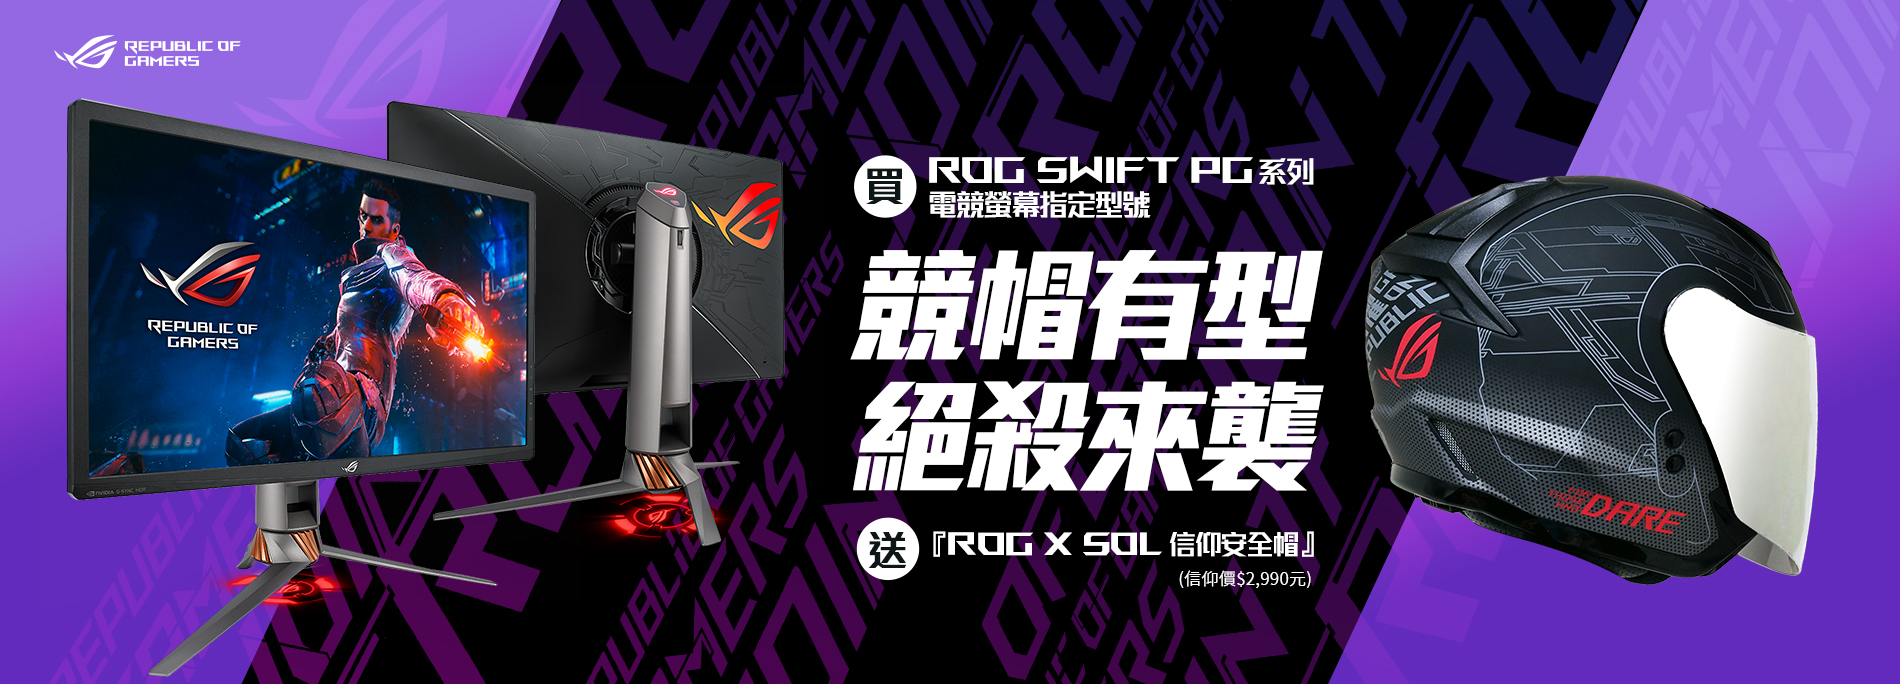 買華碩ROG swift PG系列電競螢幕指定型號 登錄送安全帽